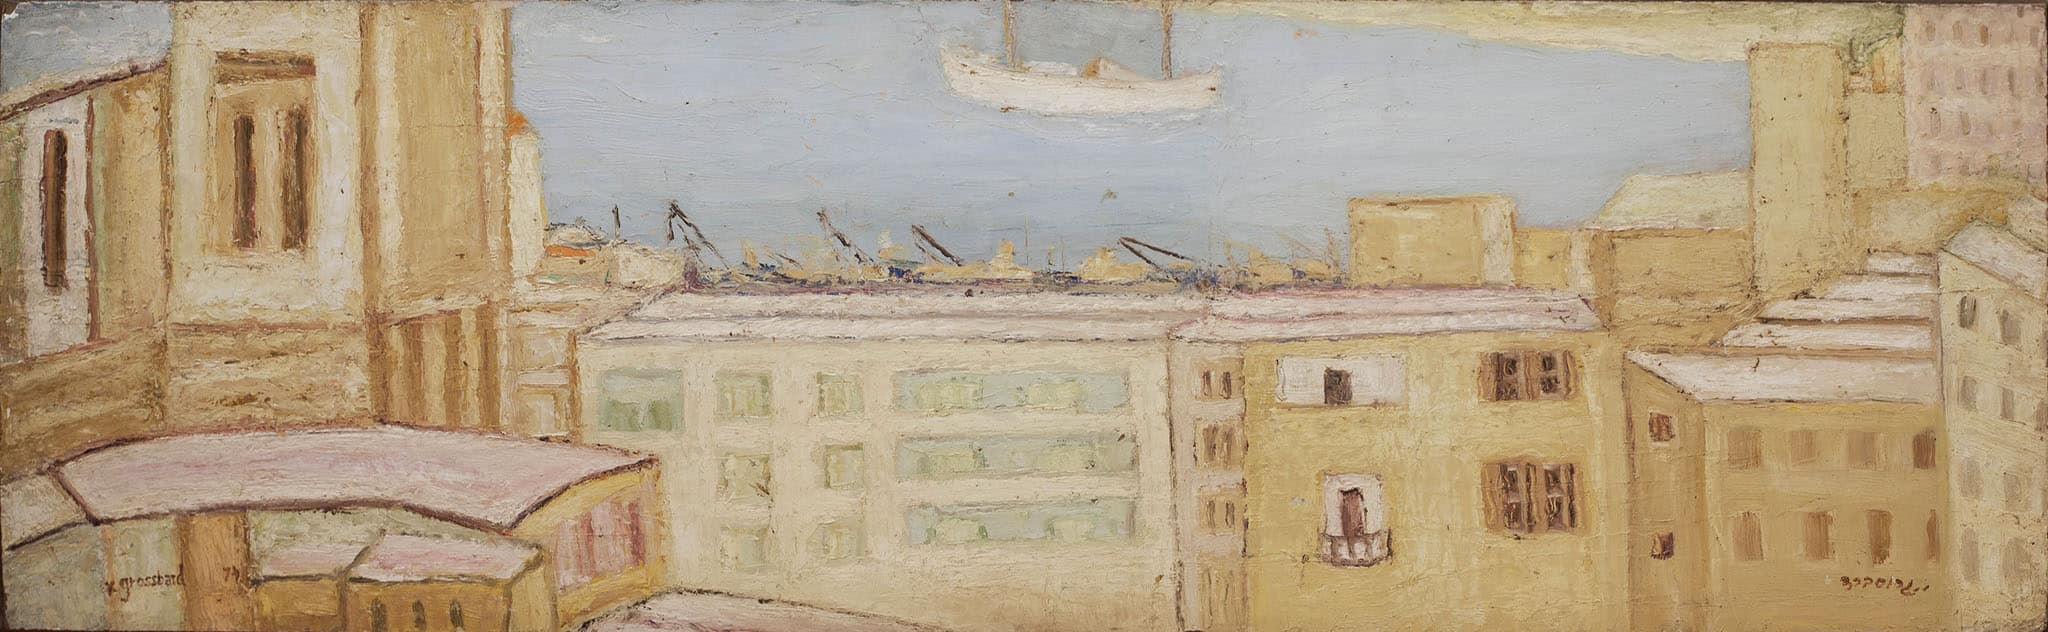 יהושע גרוסברד, "נמל חיפה", 1974, שמן על קרטון, 81x25 ס"מ